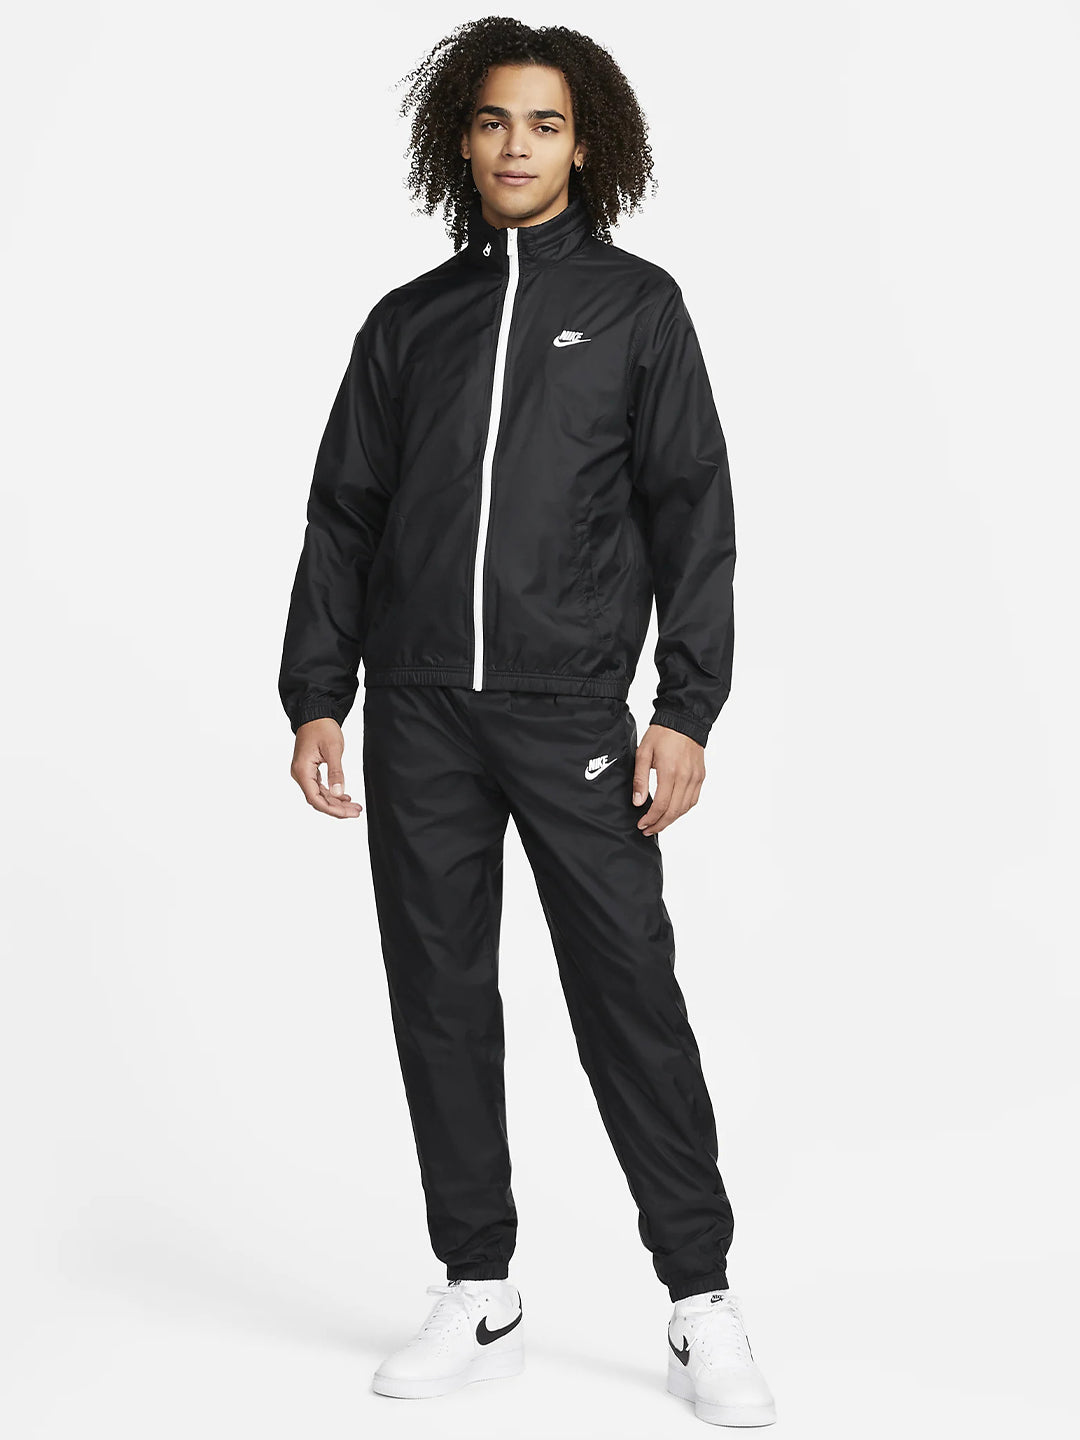 Nike coordinato nero giacca con zip e pantaloni tuta